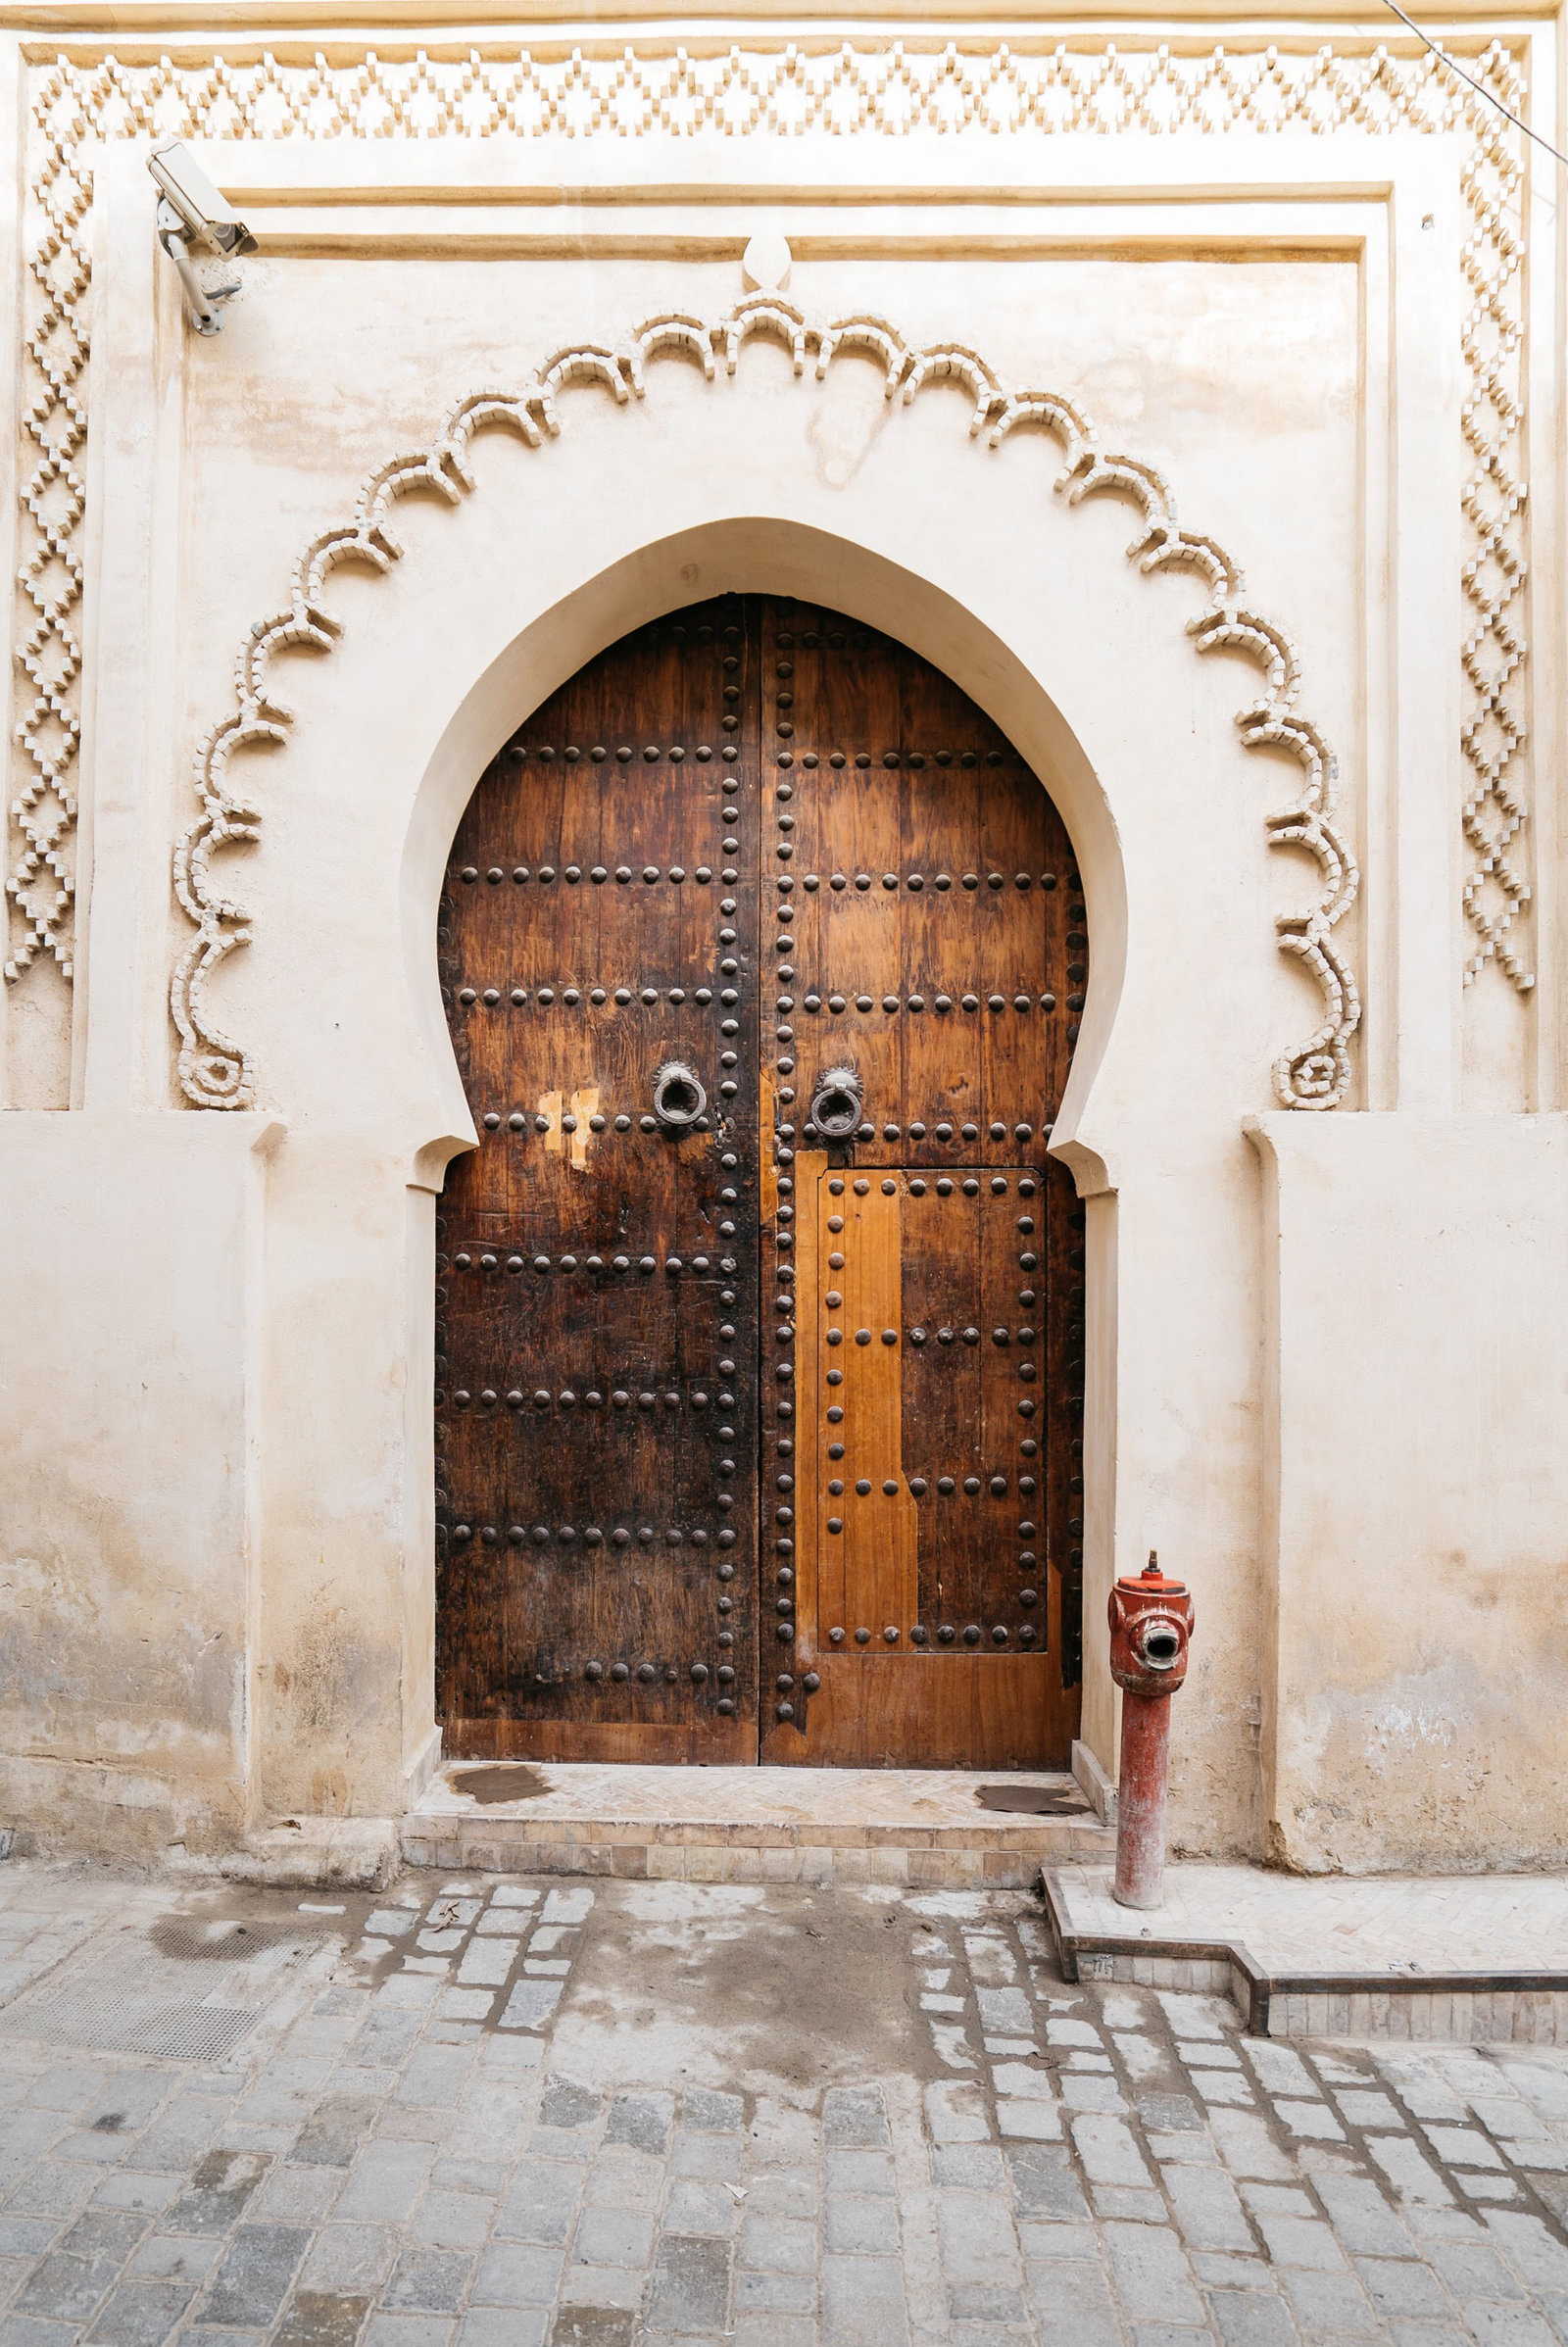 Sasha_Reiko_Photography_Travel_Morocco-121